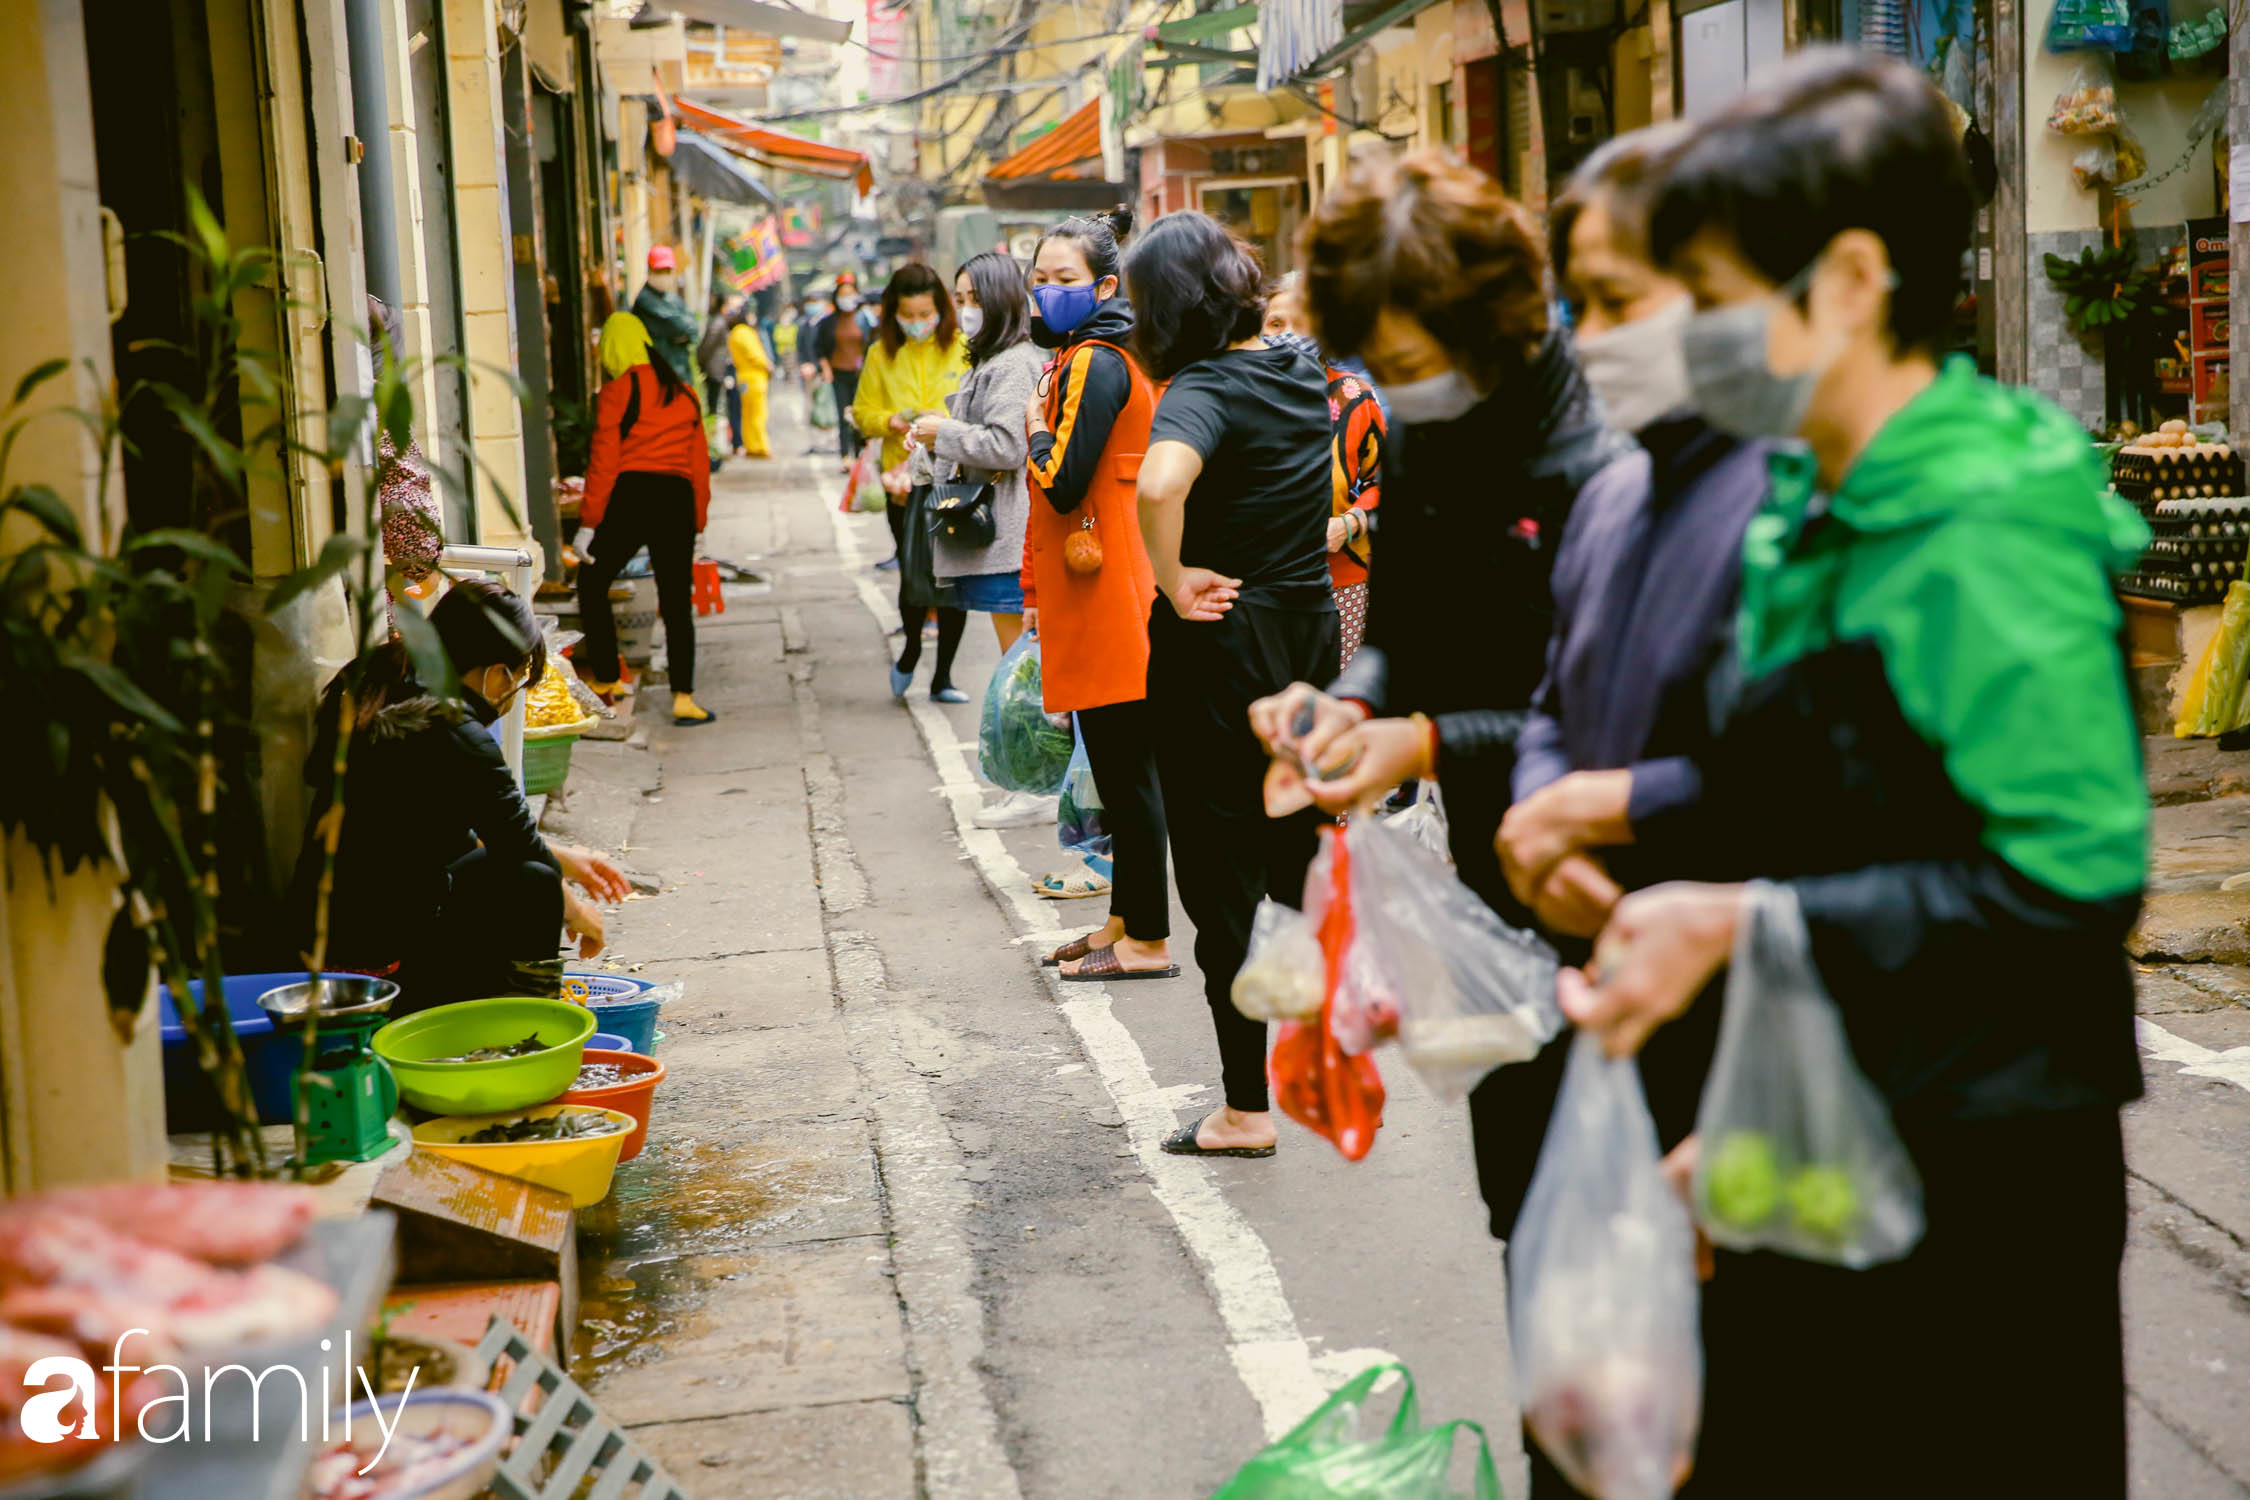 Khu chợ trong phố cổ Hà Nội kẻ vạch giãn cách 2 mét, chỉ bán hàng cho những người chịu đo thân nhiệt, đeo khẩu trang - Ảnh 5.